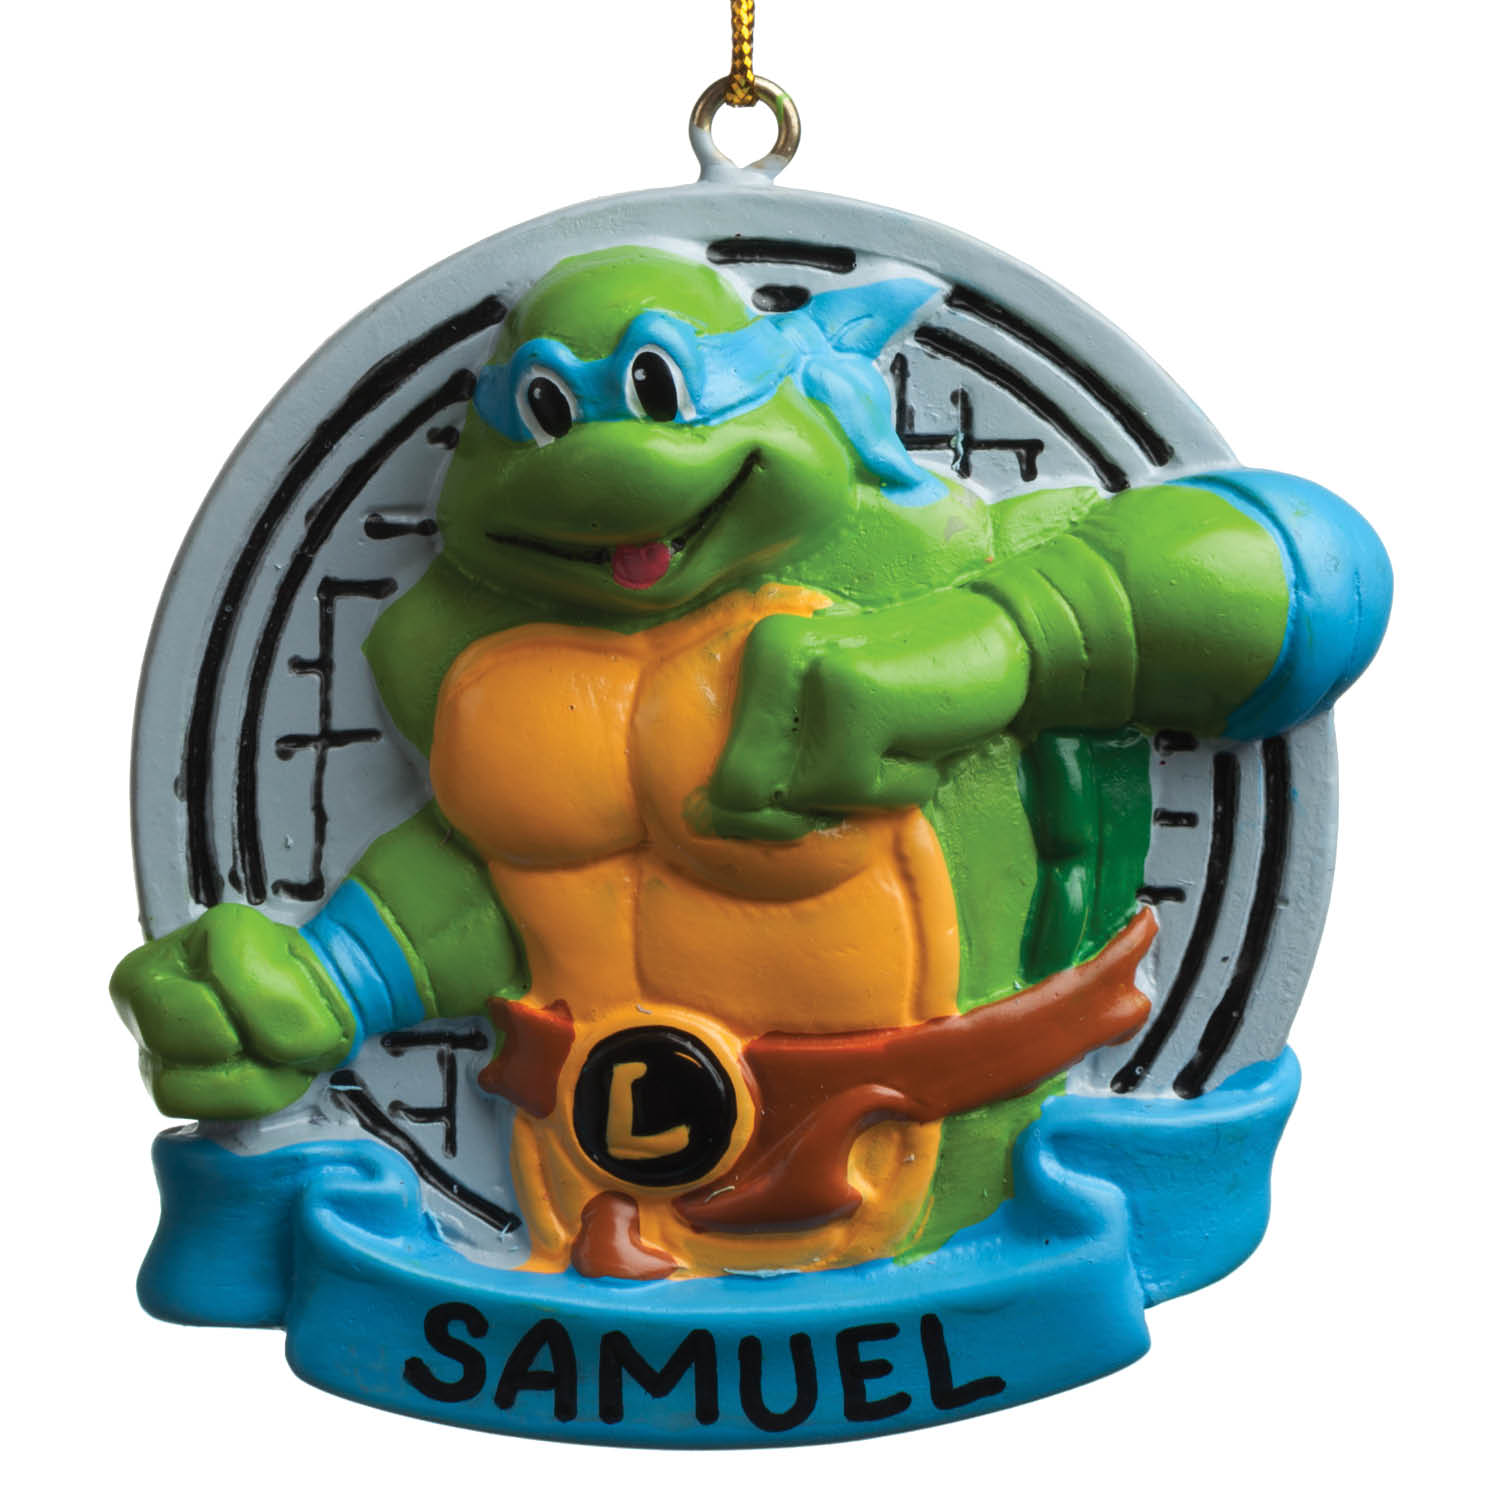 Teenage Mutant Ninja Turtle Ornament - Leonardo